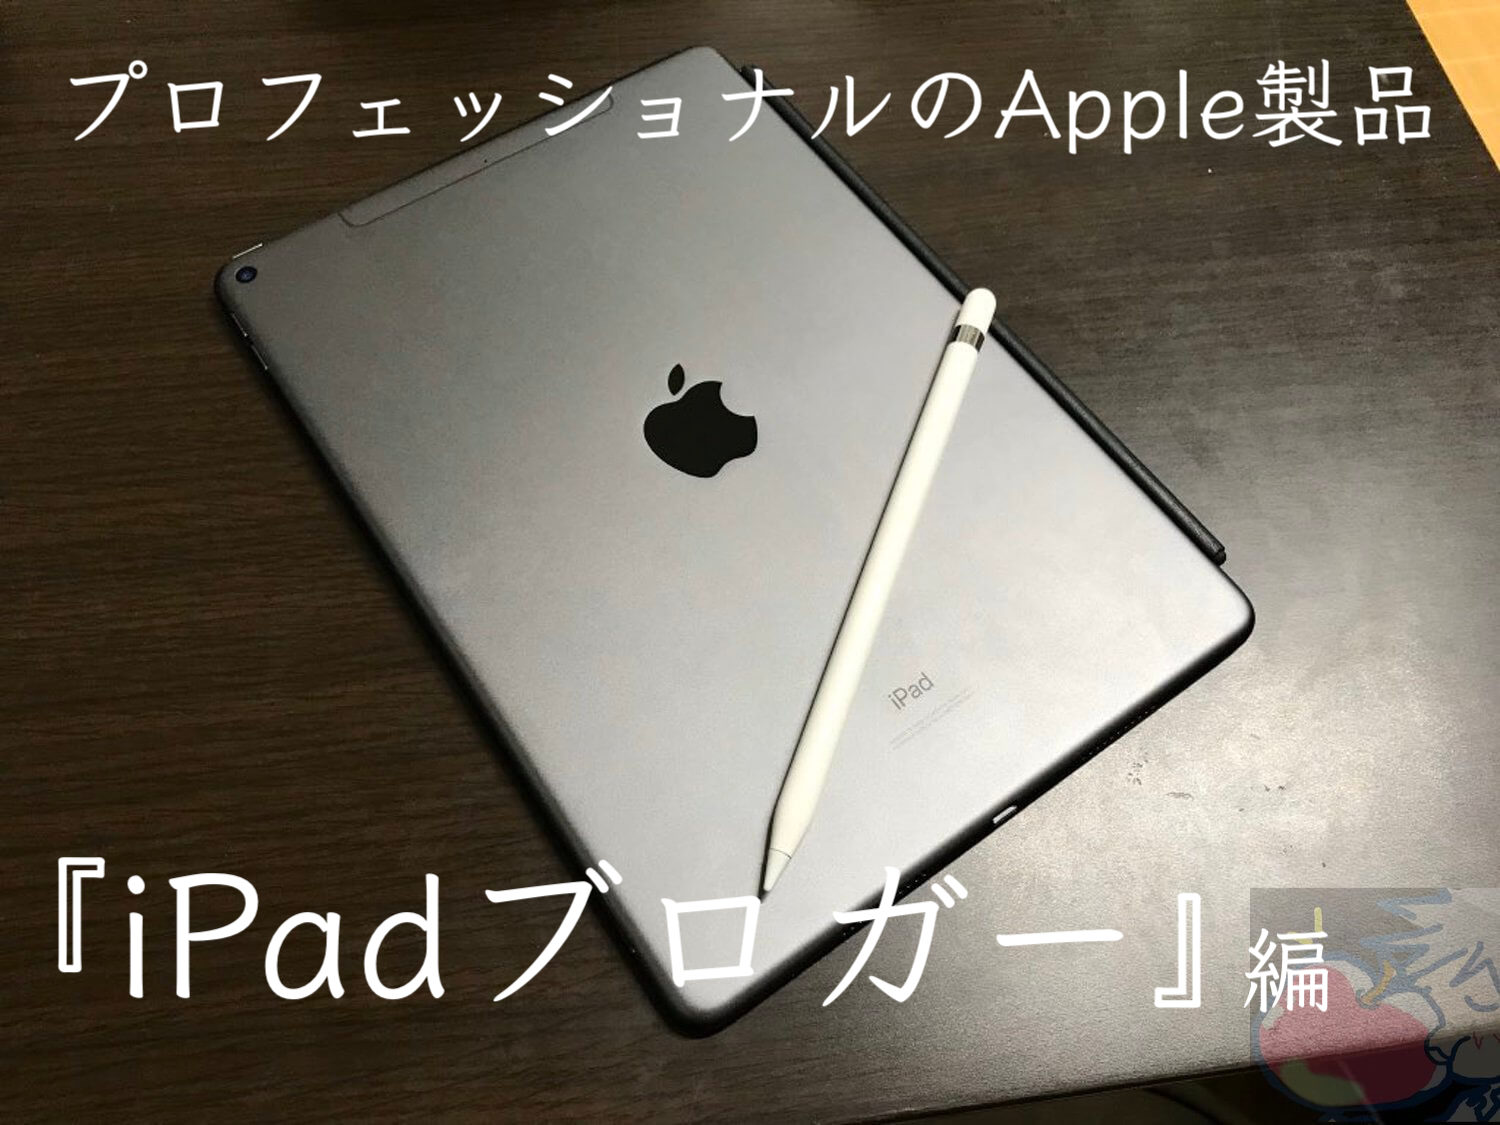 プロフェッショナルのApple製品「iPadブロガー編」